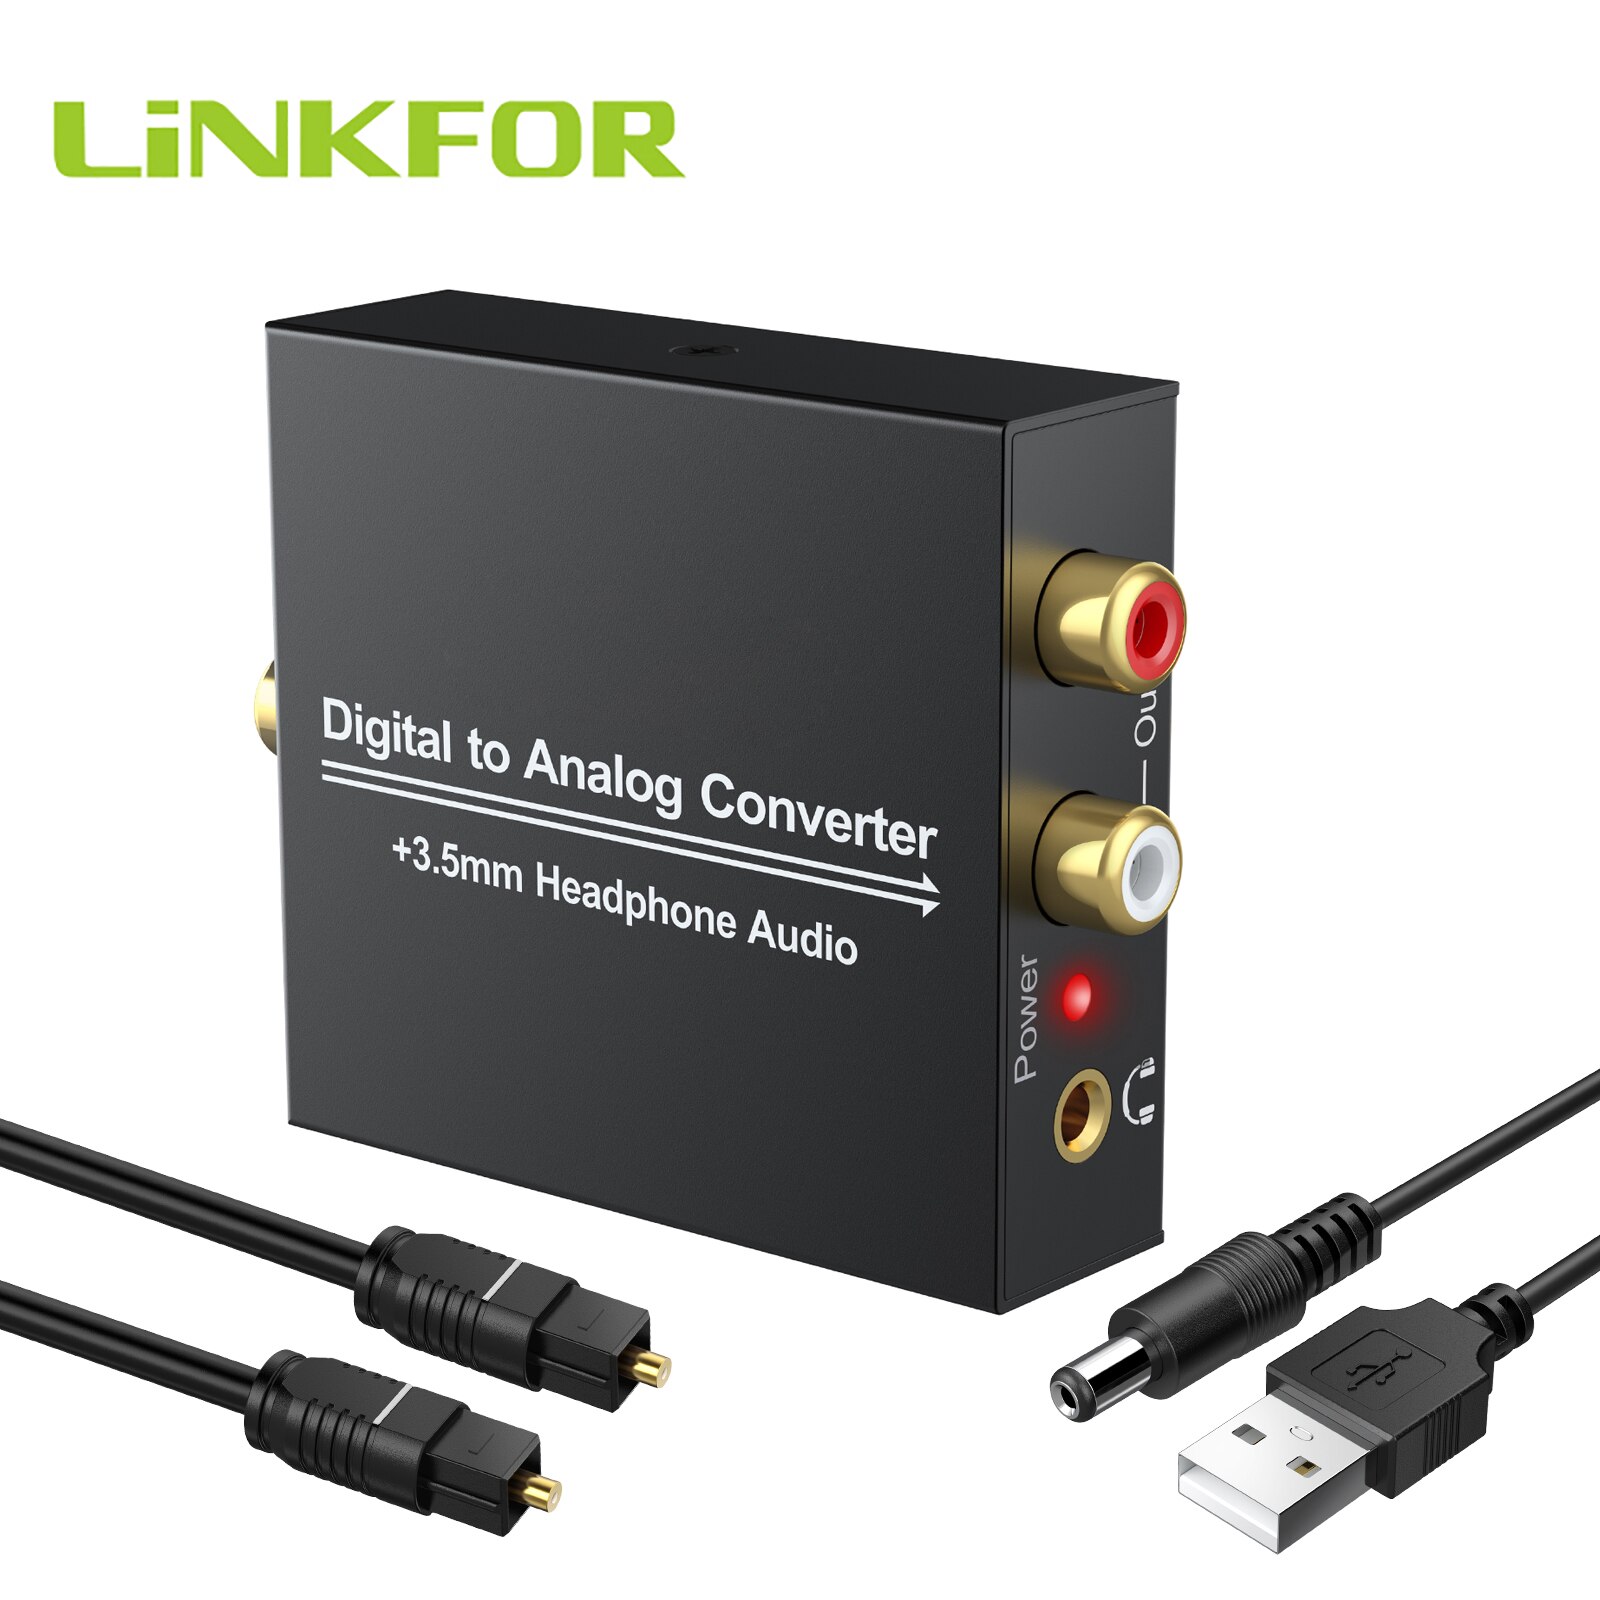 Linkfor Digitaal Naar Analoog Analoge Audio Converter Dac Adapter 96Khz 24-Bit S/Pdif Optische Toslink Coaxiale naar Analoog Rca 3.5Mm